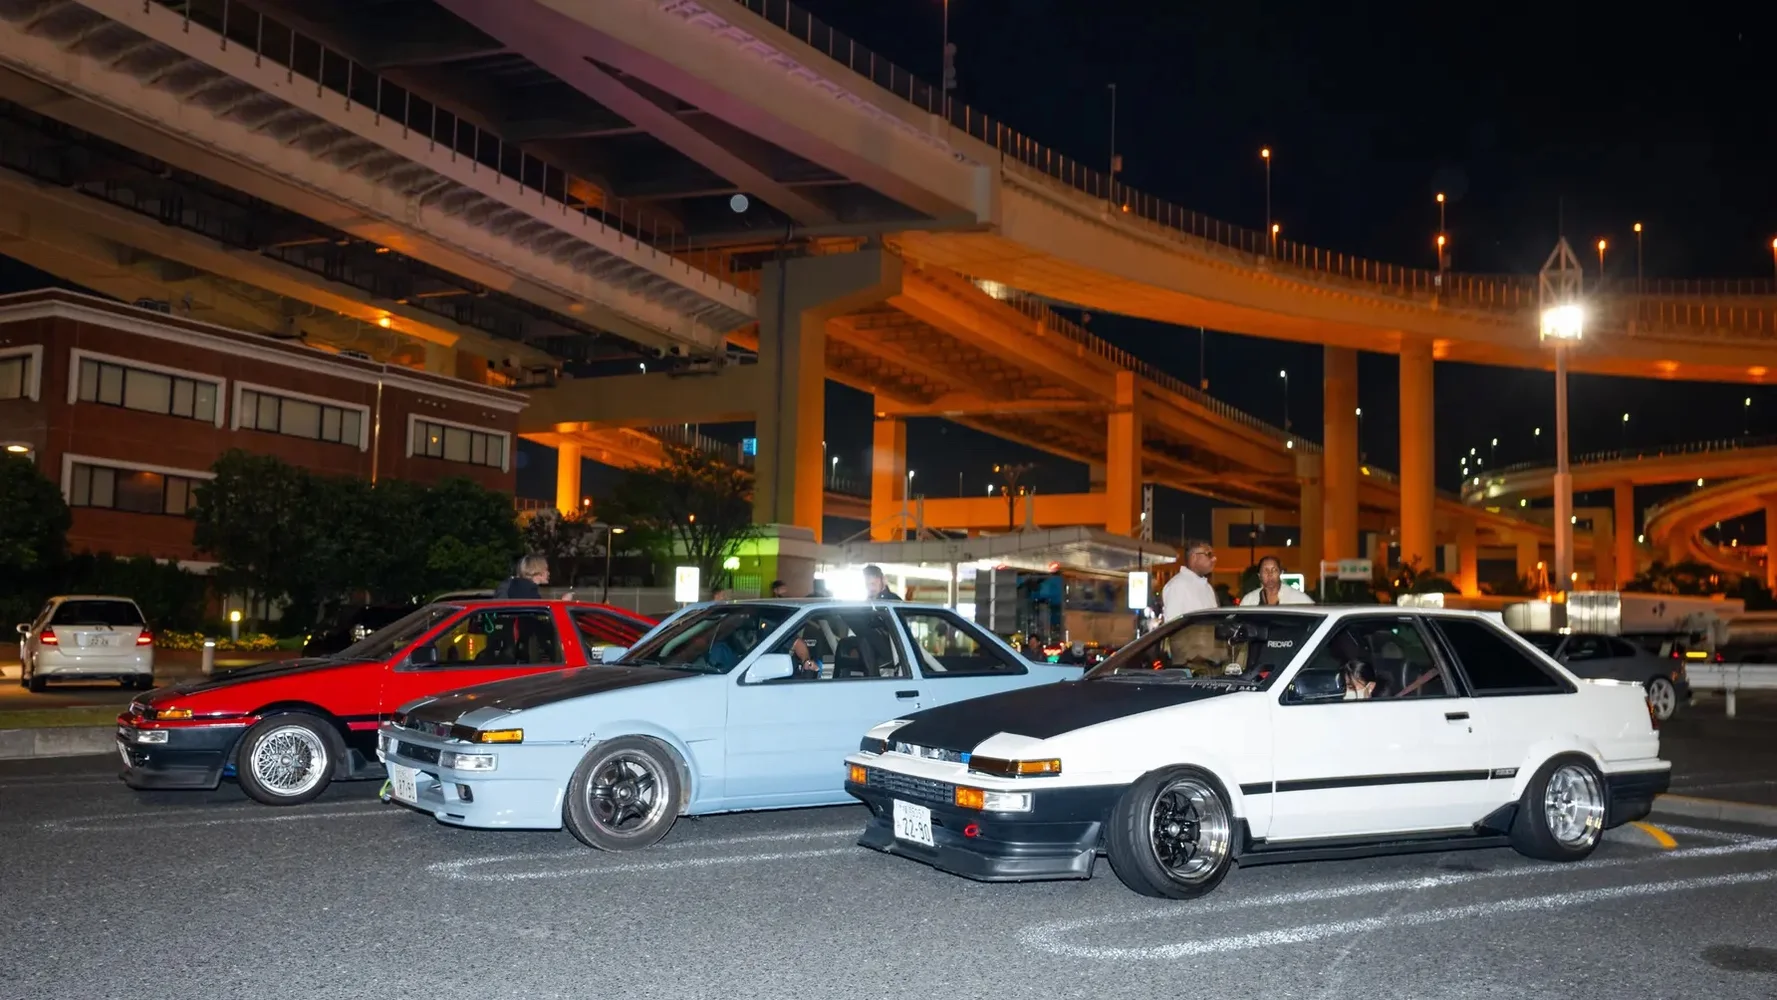 Tokyo Drift JDM Car Meet at Yokohama Daikoku / Umi Hotaru / APIT with free pickup in LEXUS